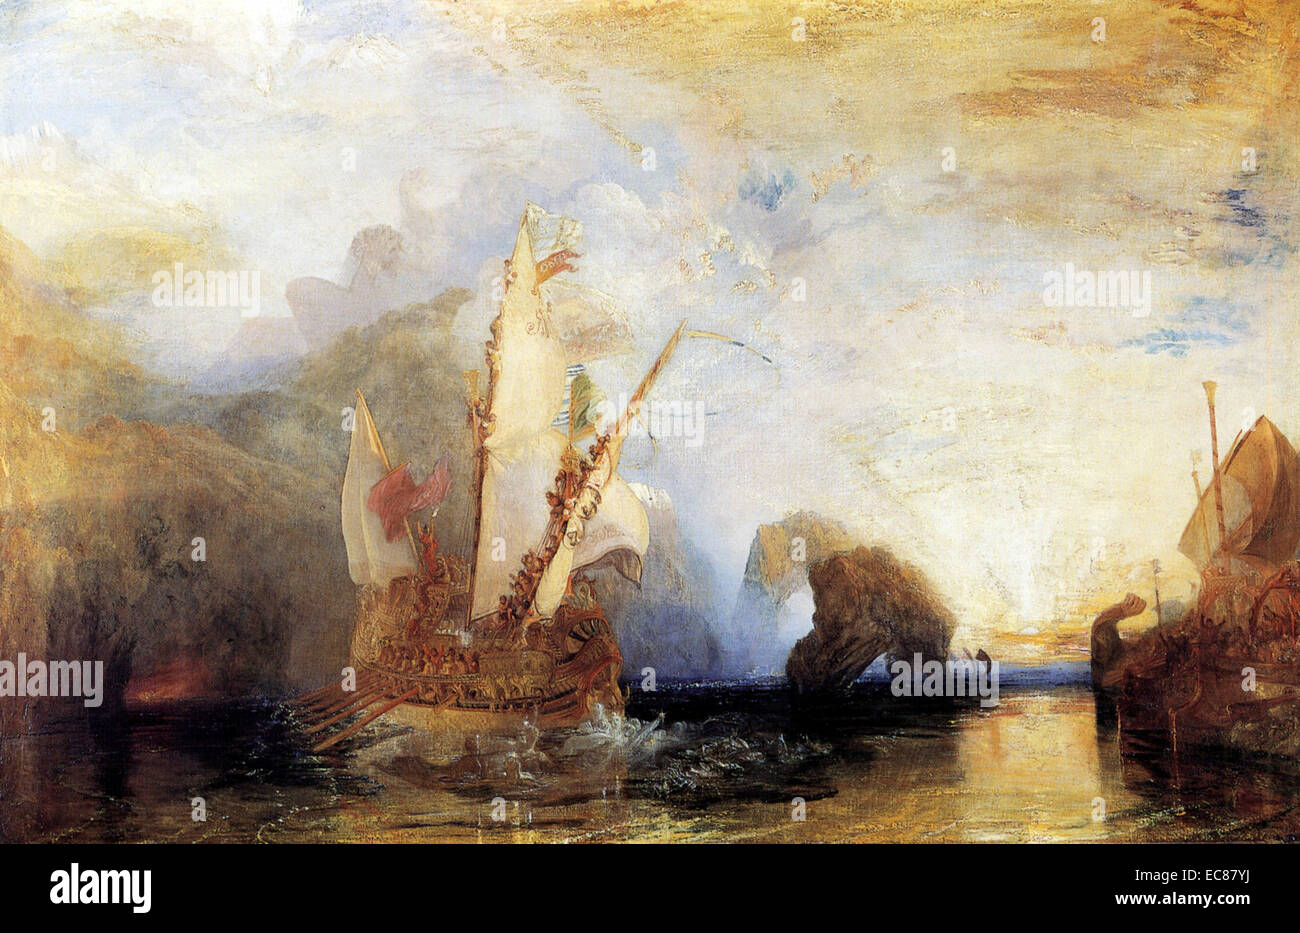 La peinture intitulée "Ulysse se moquer de Polyphème" illustrant une scène de l'Odyssée d'Homère, Ulysse montrant debout sur son navire se moquer de Polyphème. Peint par Joseph Mallord William Turner. Datée 1829 Banque D'Images